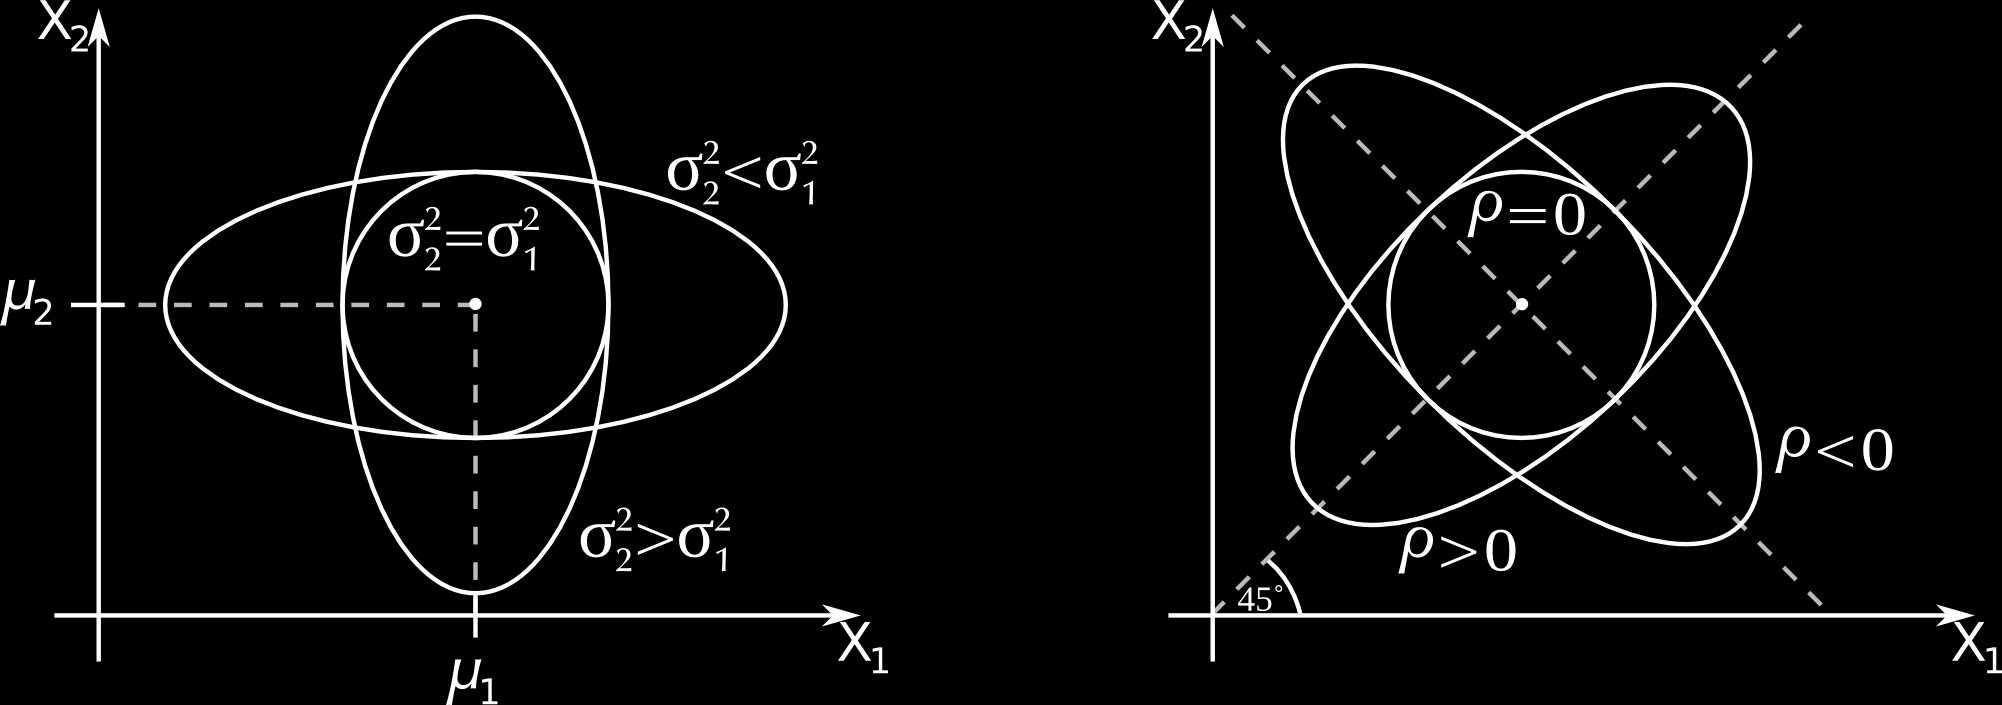 Platí: ϱ X x = = Lemma: ϱ X x ϱ X x =,..., = = =,..., Pozámka: Žádý acálí oztyl emůže být větší ež oztyl. Pozámka: Uvedeé vlastost egesí fukce x, t. NNLP a maxmálí koelace, ezávsí a omaltě.